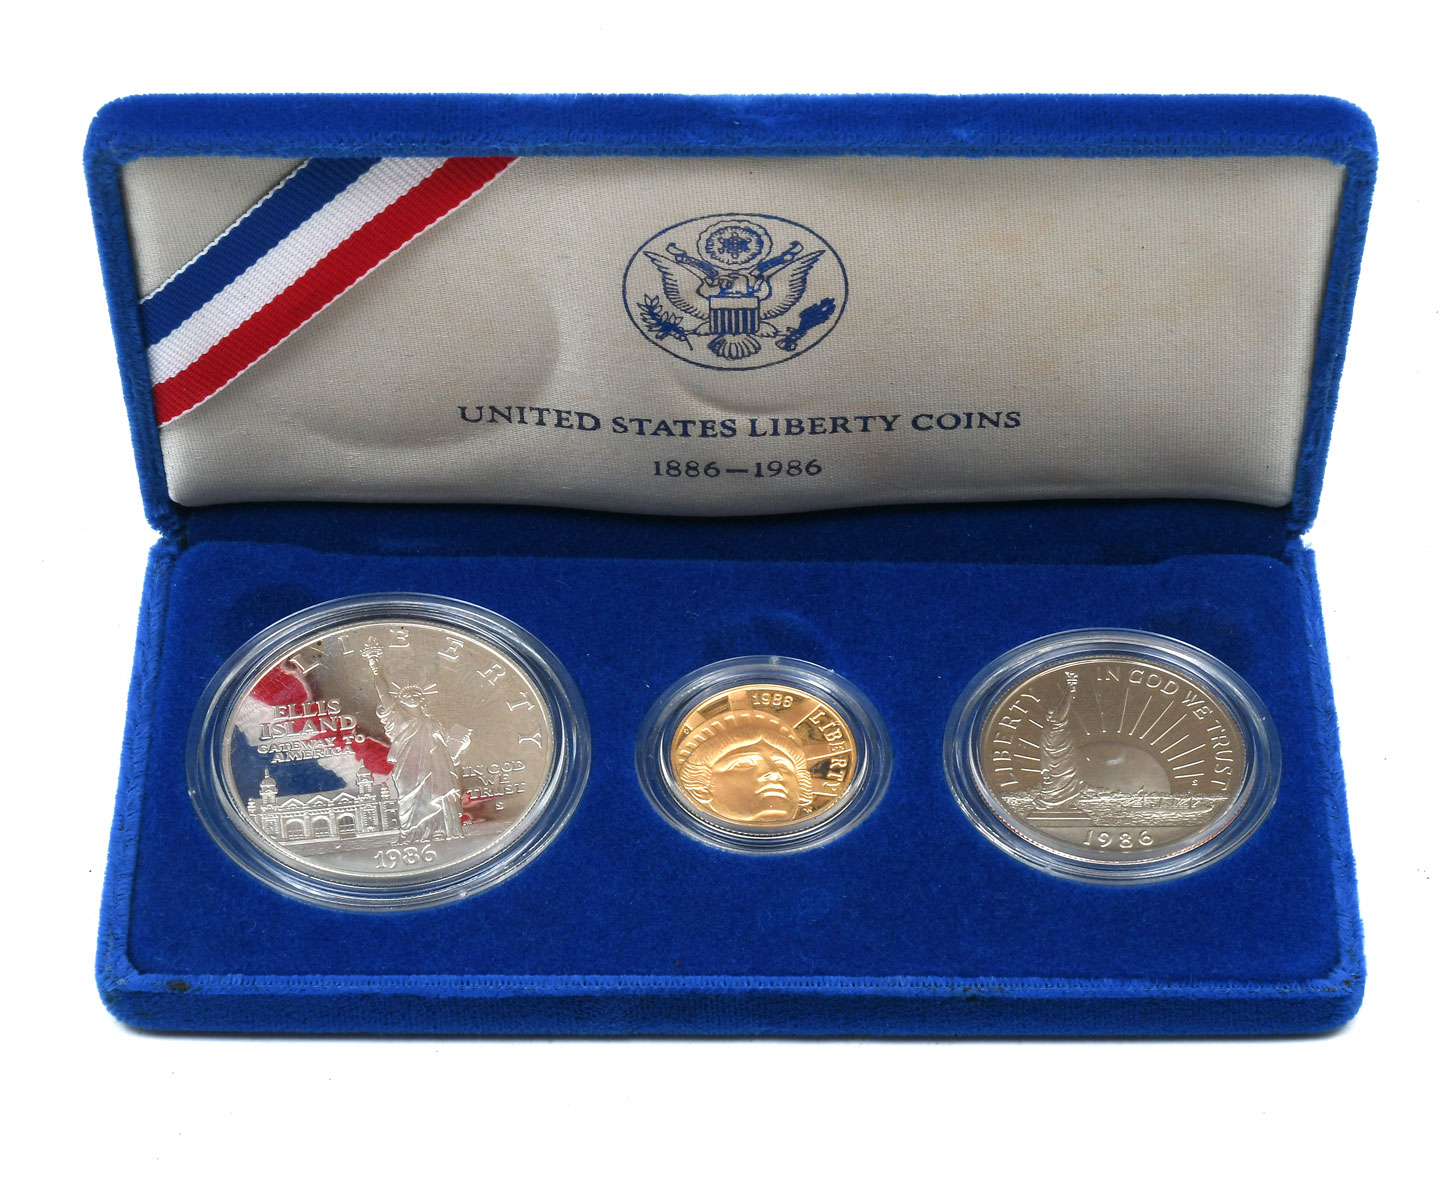 1986 UNITED STATES LIBERTY COINS 274e3e